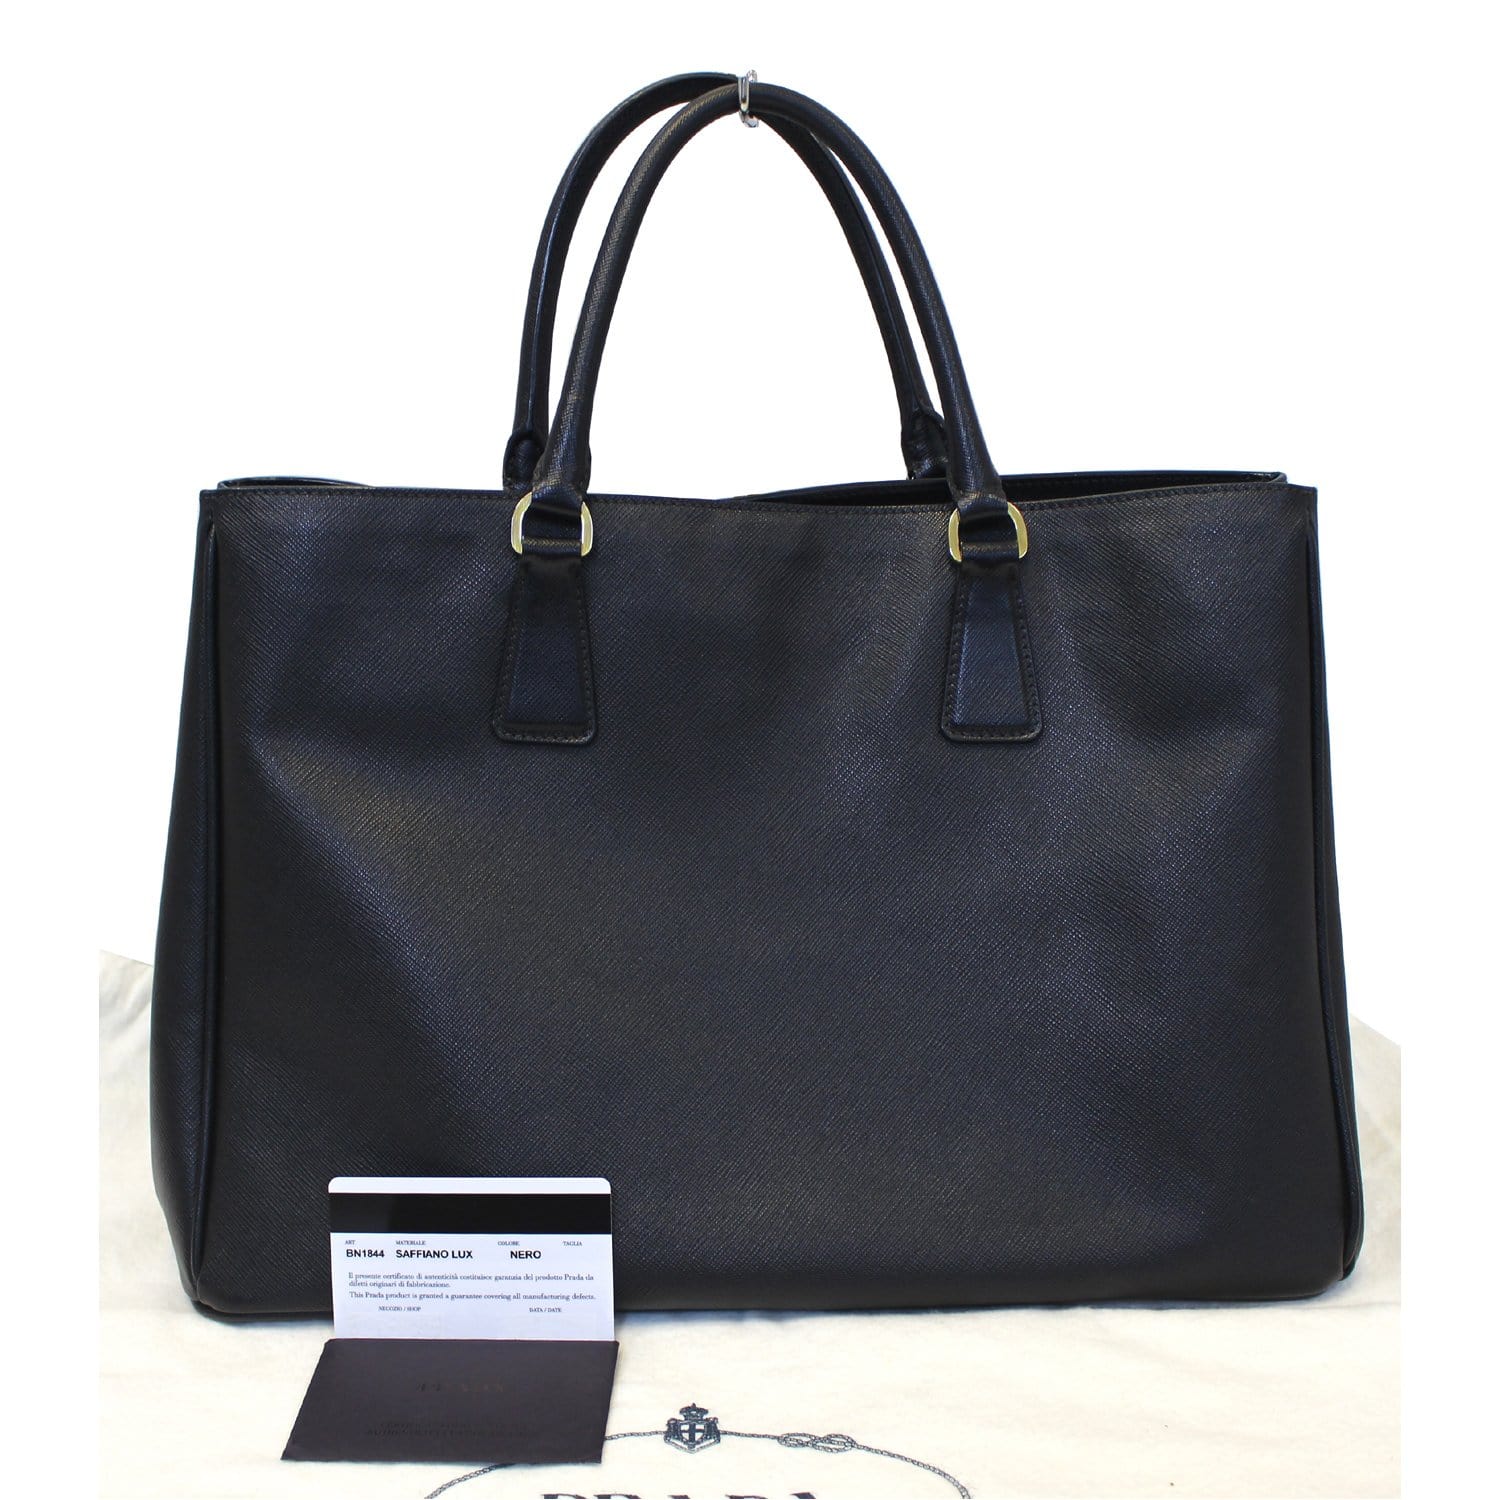 Prada Galleria Medium Bag